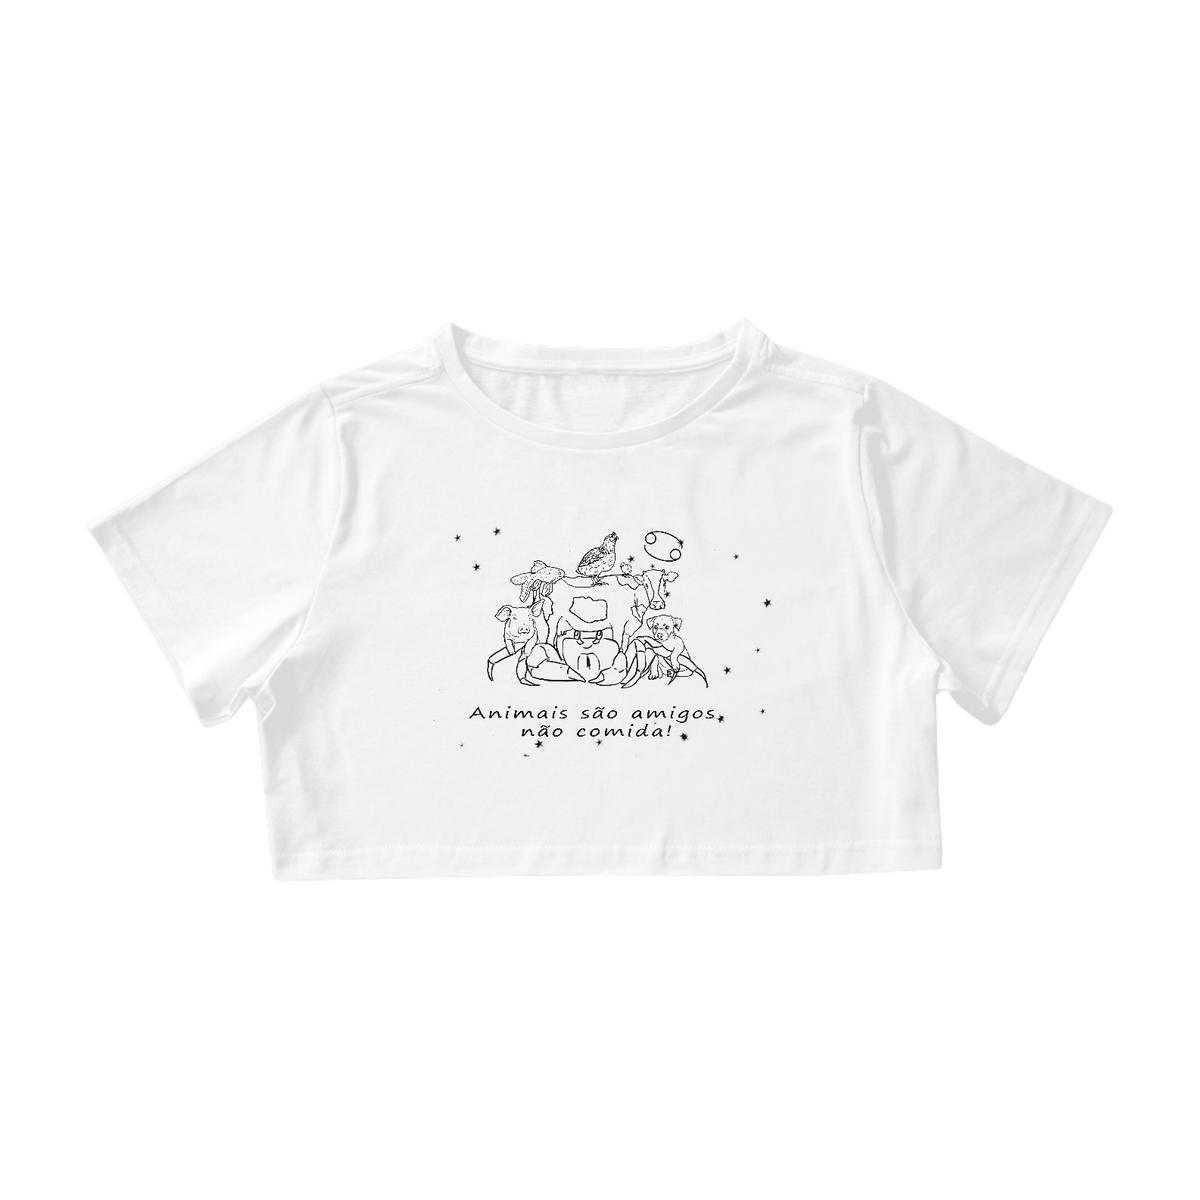 Nome do produto: Camiseta Cropped | Câncer | Animais são amigos, não comida! | P&B